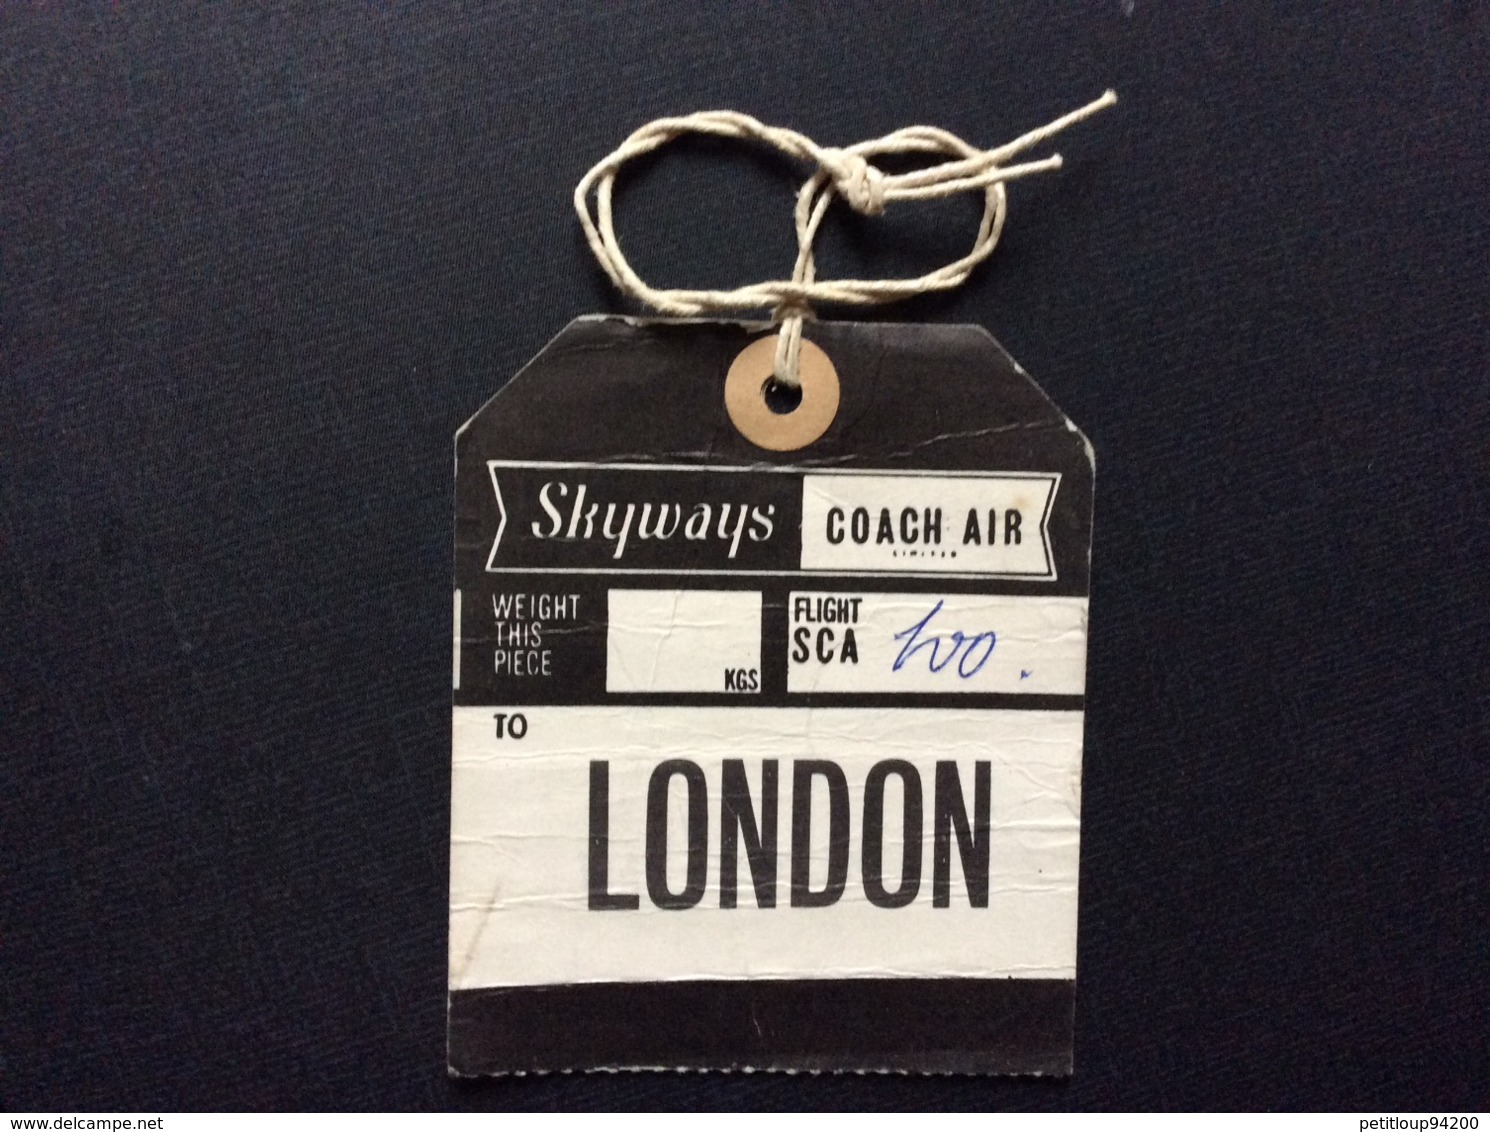 ETIQUETTE A BAGAGES  SKYWAYS COACH AIR  Beauvais>London  BAGGAGE TAG  Années 1950 - Étiquettes à Bagages